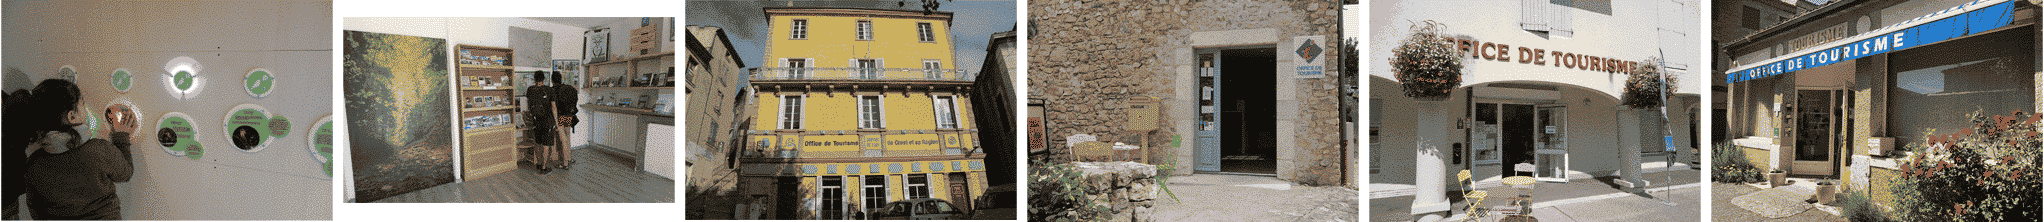 Bureaux d'accueil des Offices de tourisme de la Vallée de la Drôme